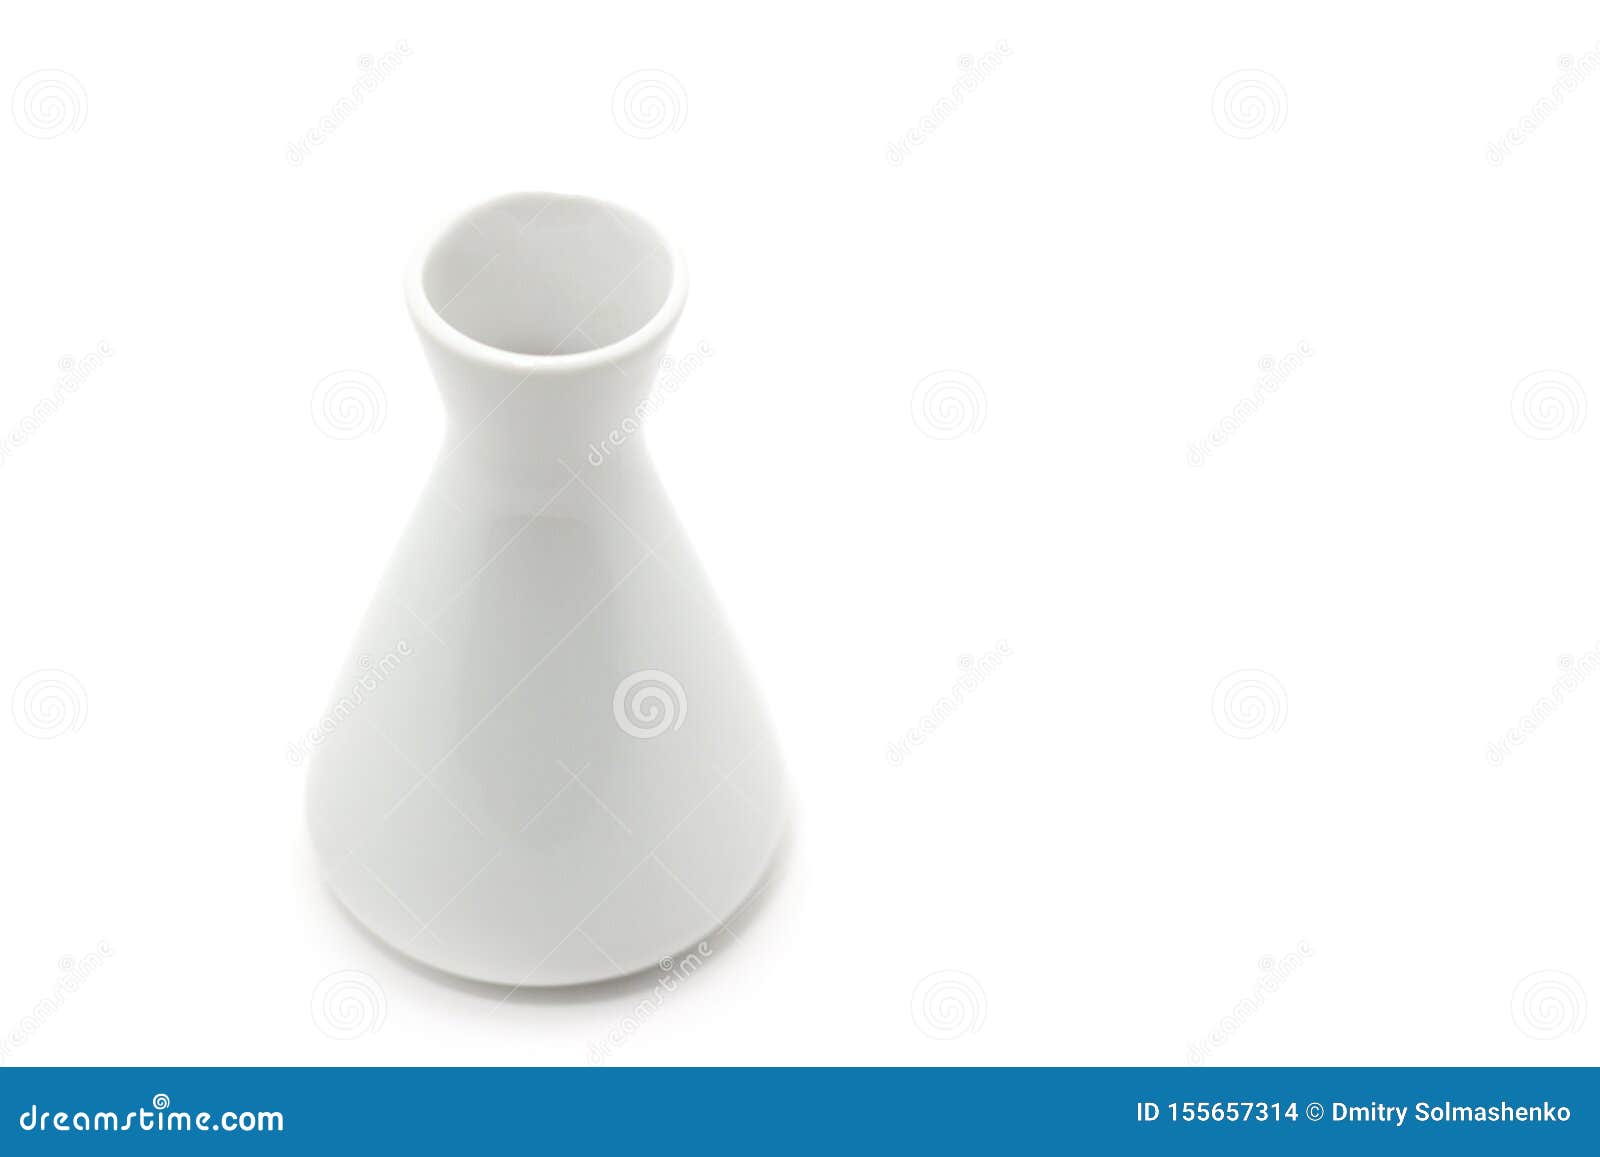 White Decorative Vase Isolated on White Background Stock Photo - Image ...